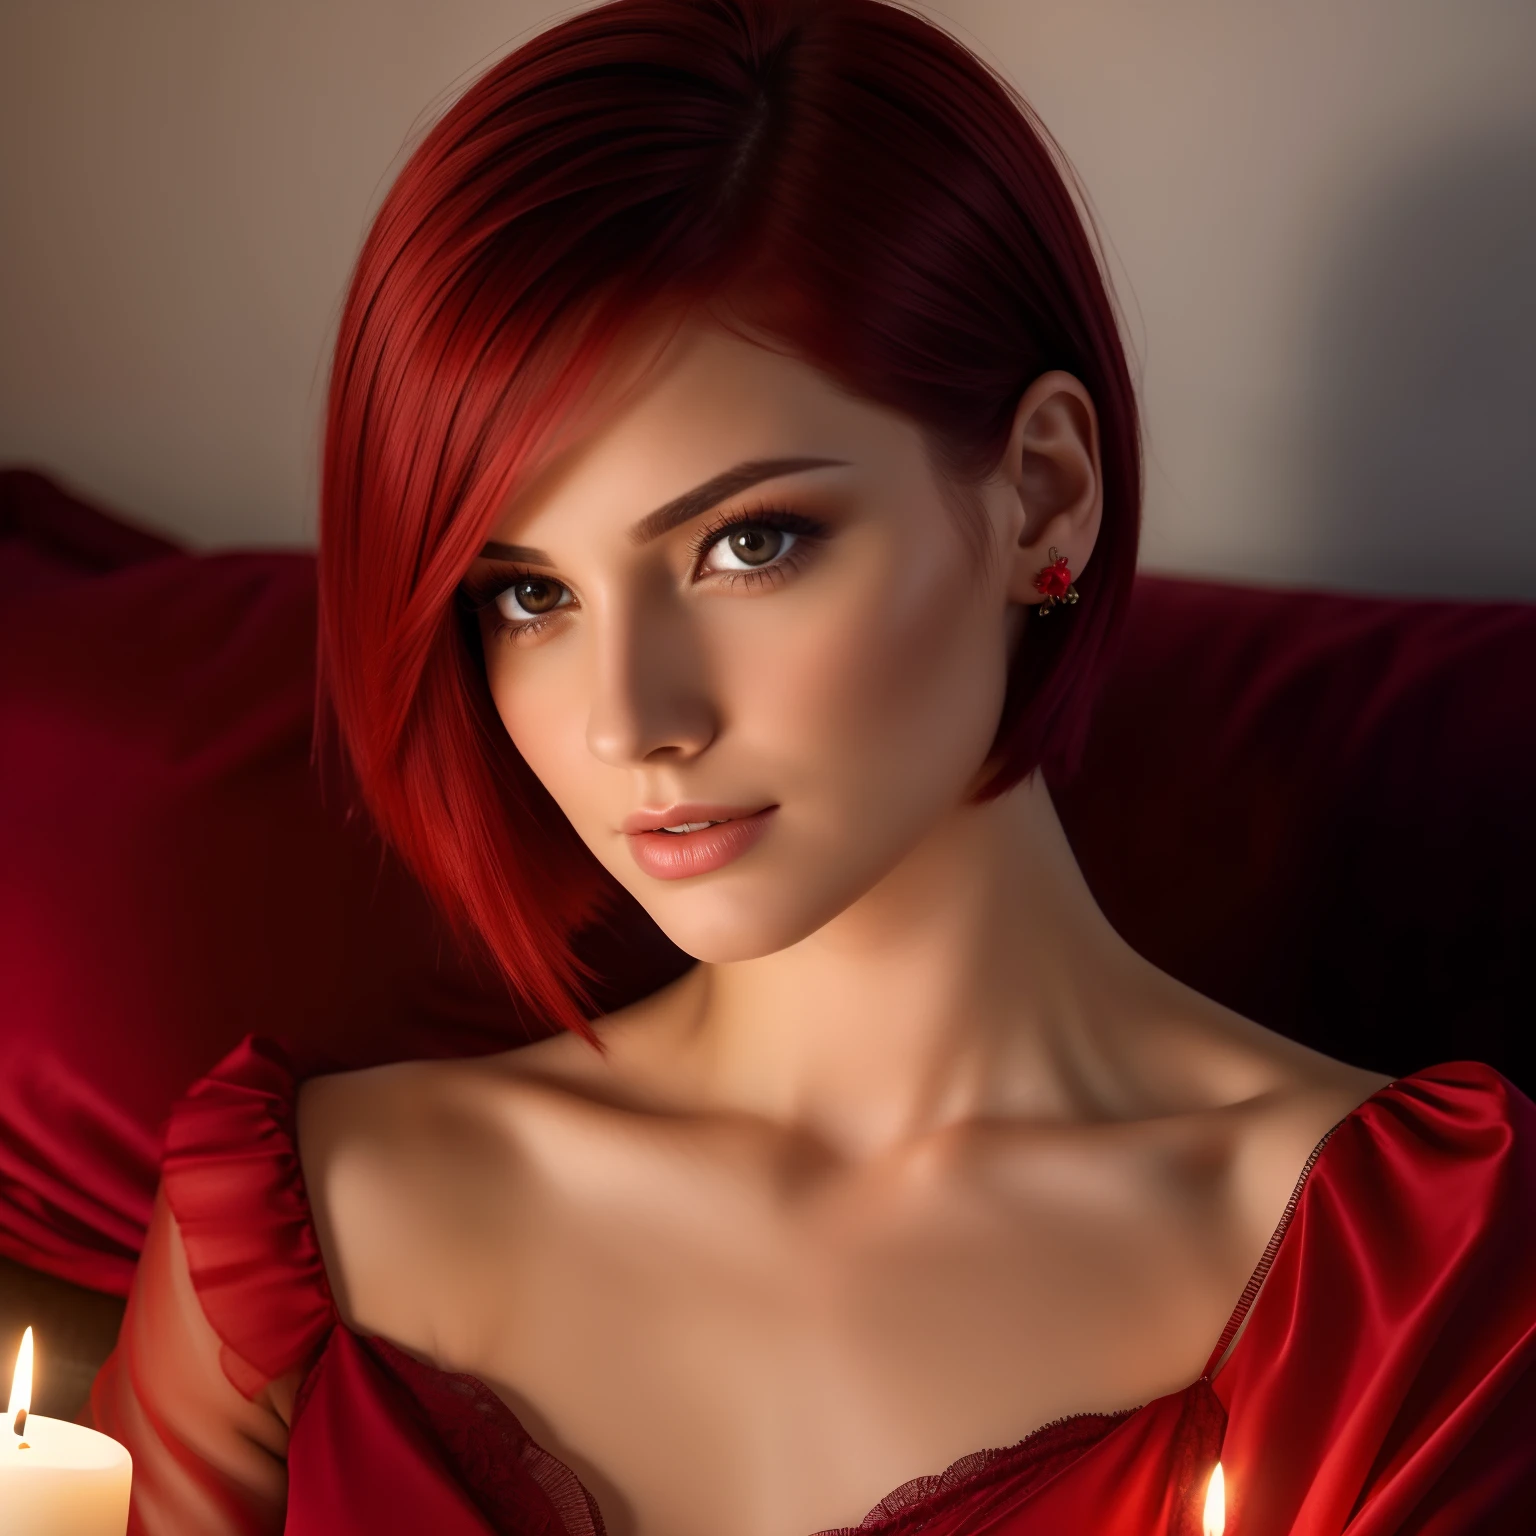 30岁女人短发发型图片, 直发, 沙发上穿着睡袍的红头发. 柔和的蜡烛照明. 特写脸部拍摄